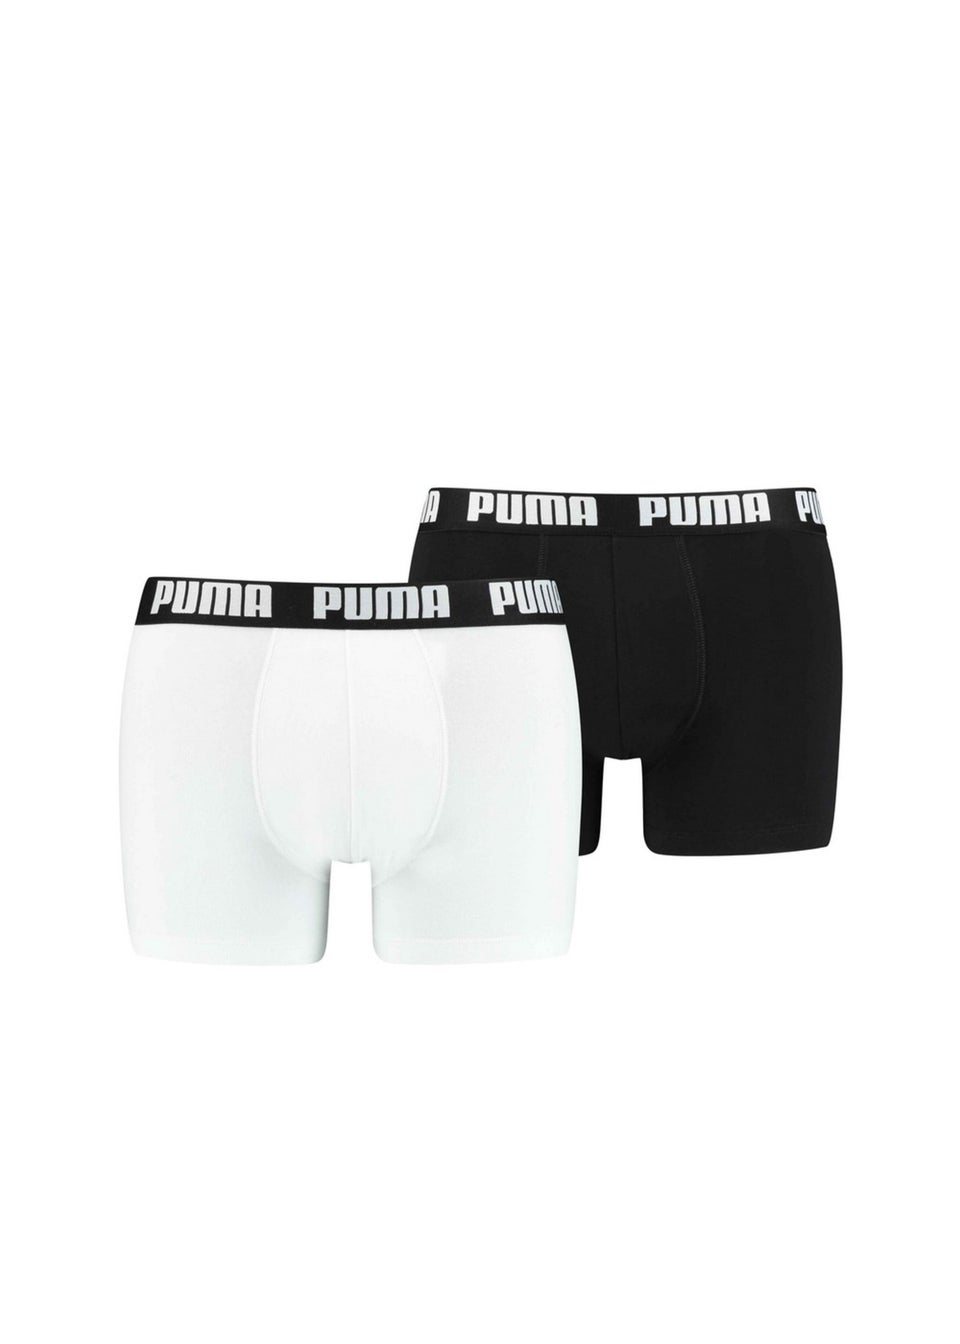 Puma Black/White Basic Boxer Shorts (Pack of 2)